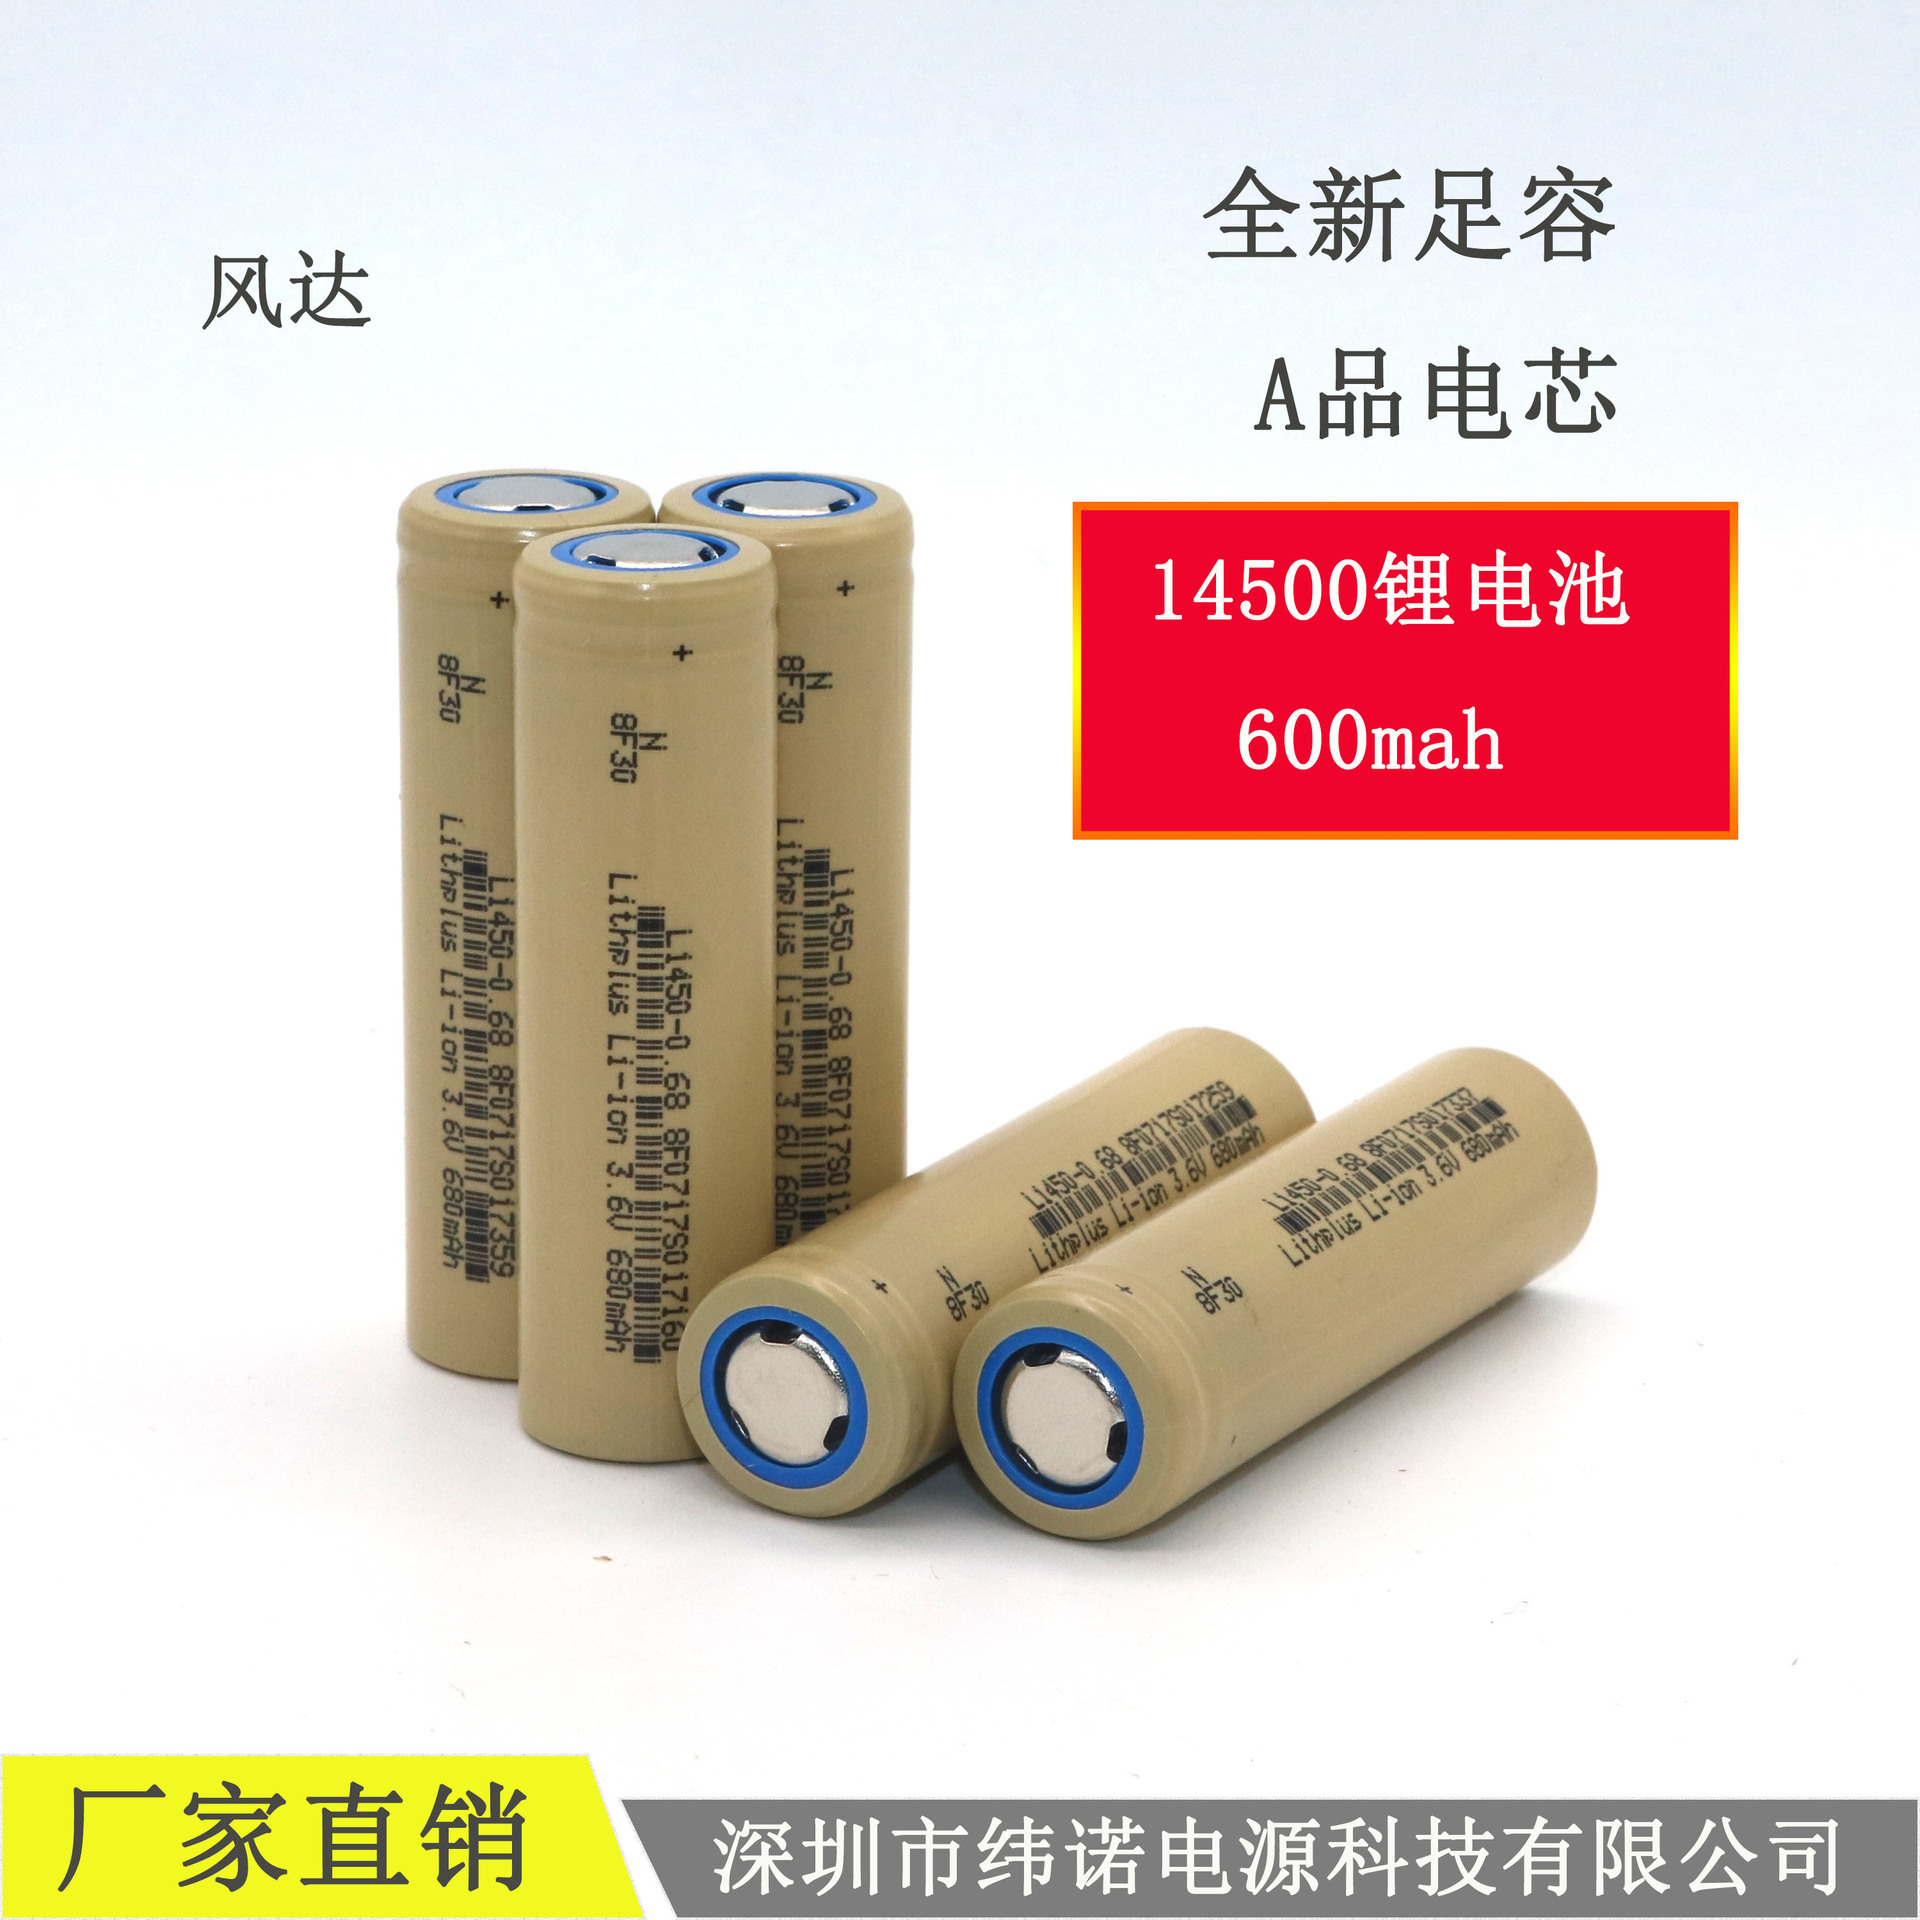 厂家直销14500三浦锂电池3.6v足容600mah五号电池生活大部分电器